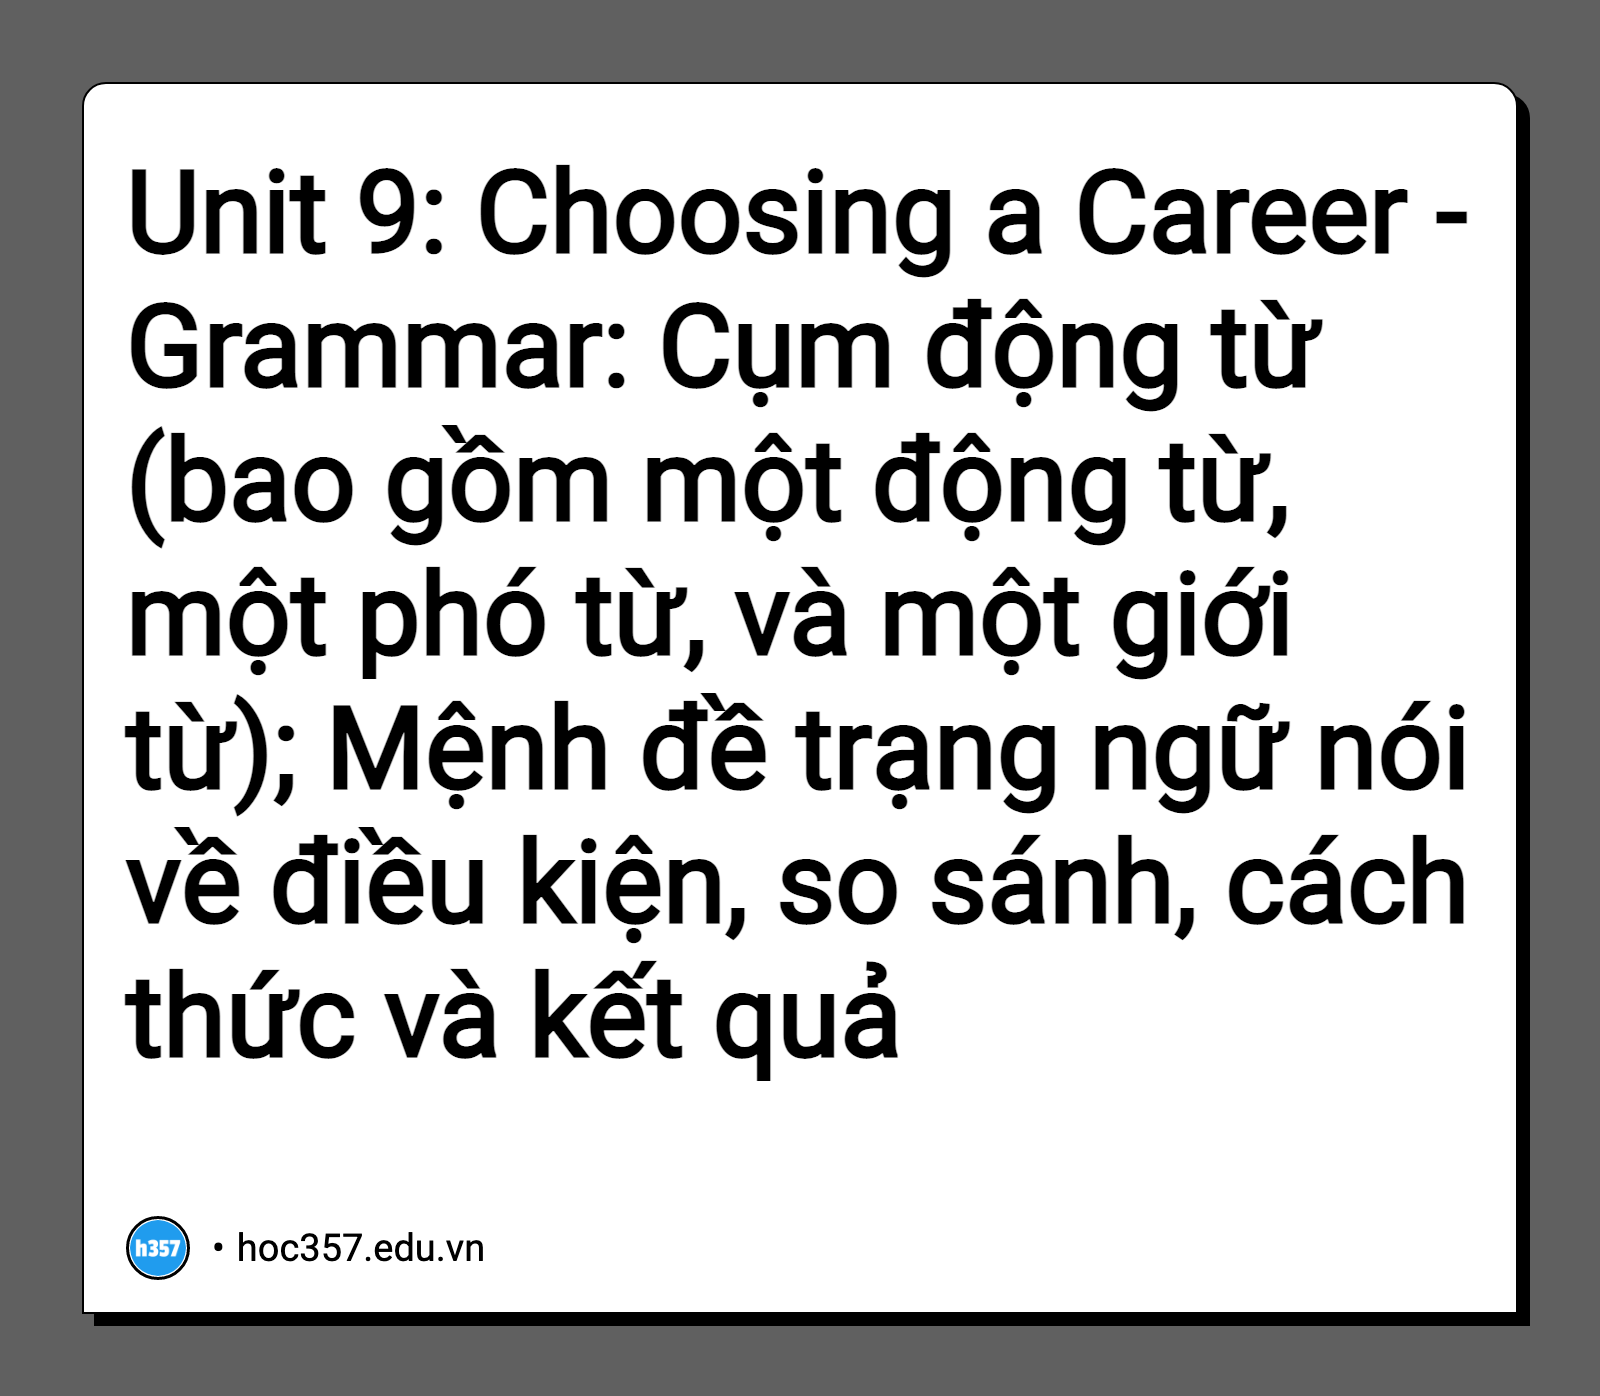 Hình minh họa Unit 9: Choosing a Career - Grammar: Cụm động từ (bao gồm một động từ, một phó từ, và một giới từ); Mệnh đề trạng ngữ nói về điều kiện, so sánh, cách thức và kết quả